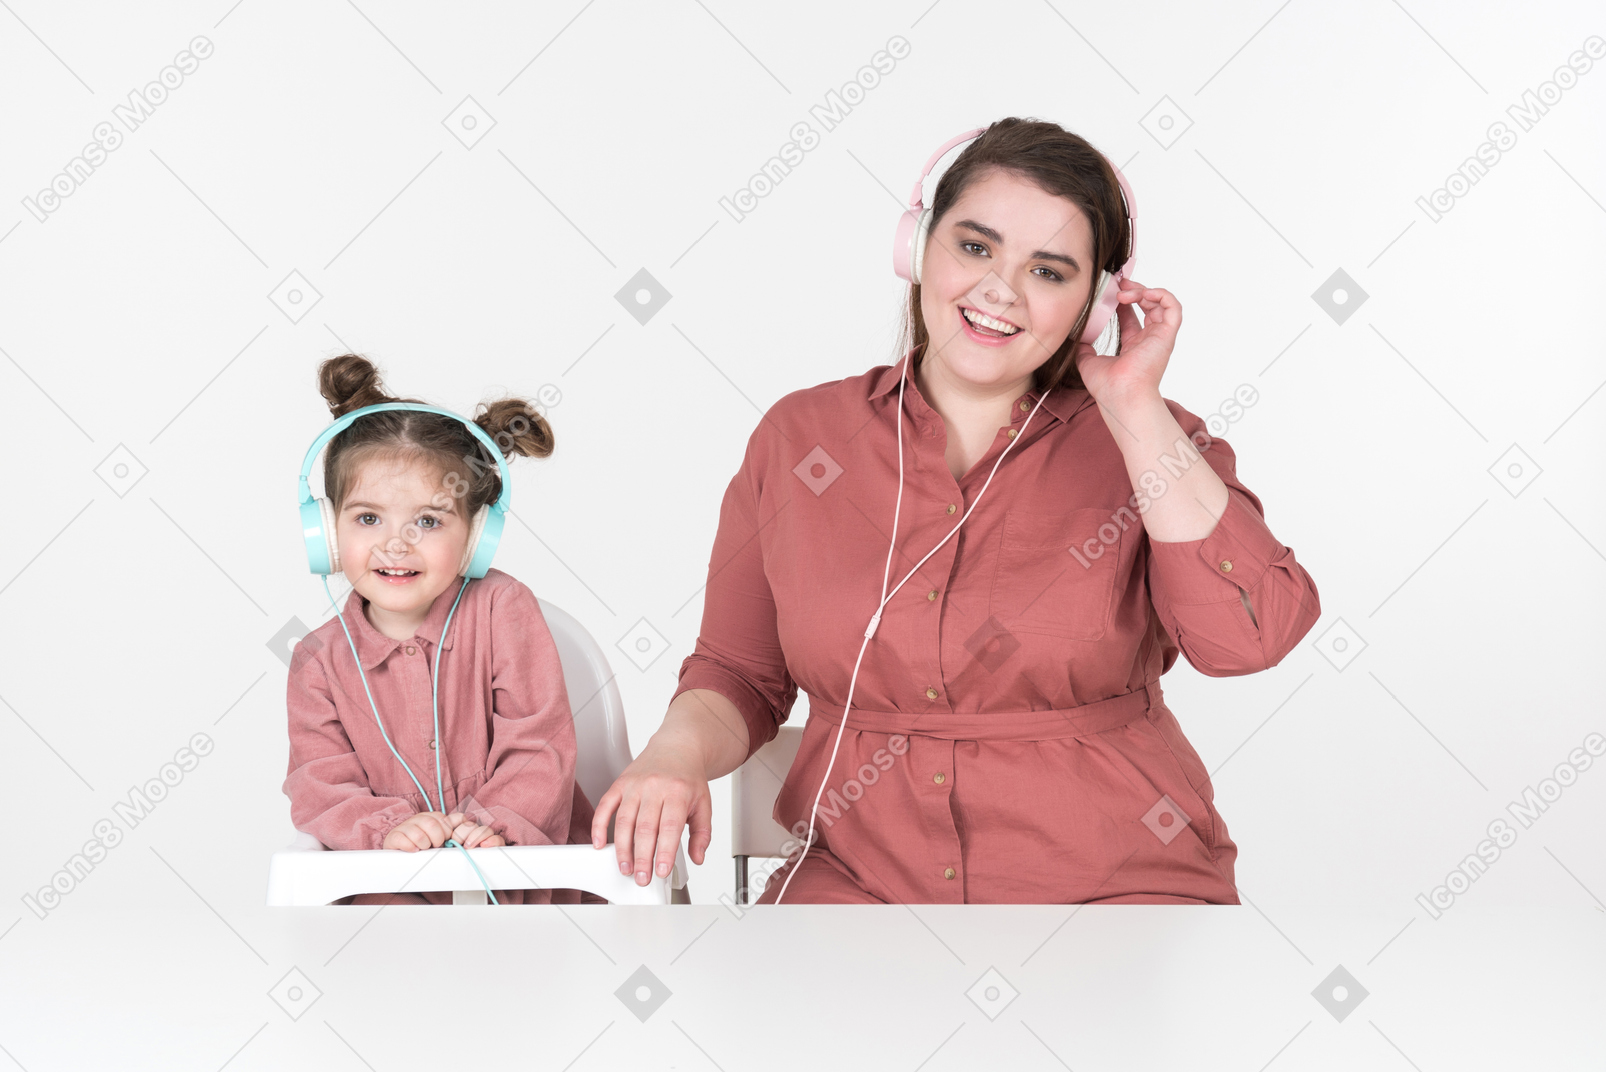 Madre y su pequeña hija, vestidas con ropas rojas y rosadas, sentadas a la mesa, escuchando la música juntas